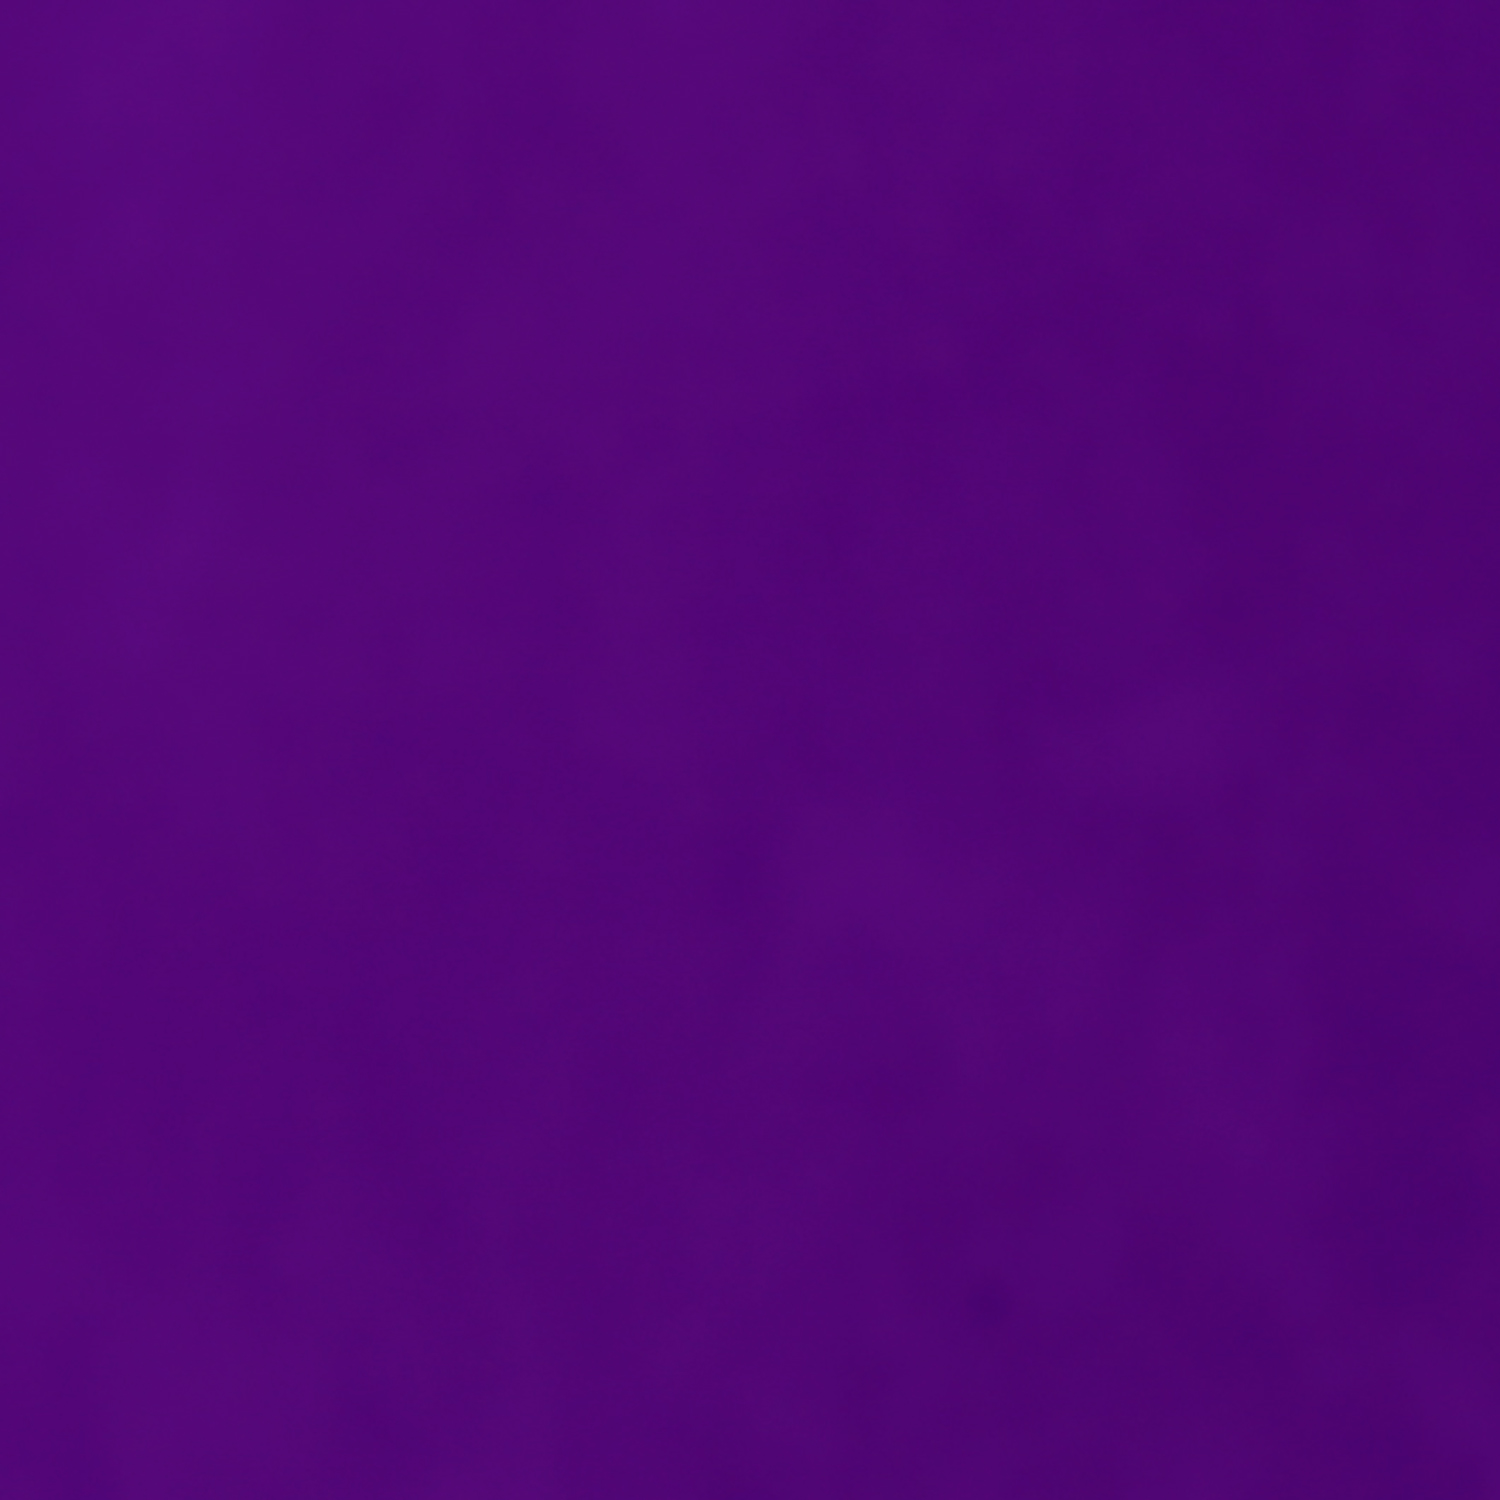 Purple Backgrounds, Compatible - PC, Mobile, Gadgets| 1500x1500 px